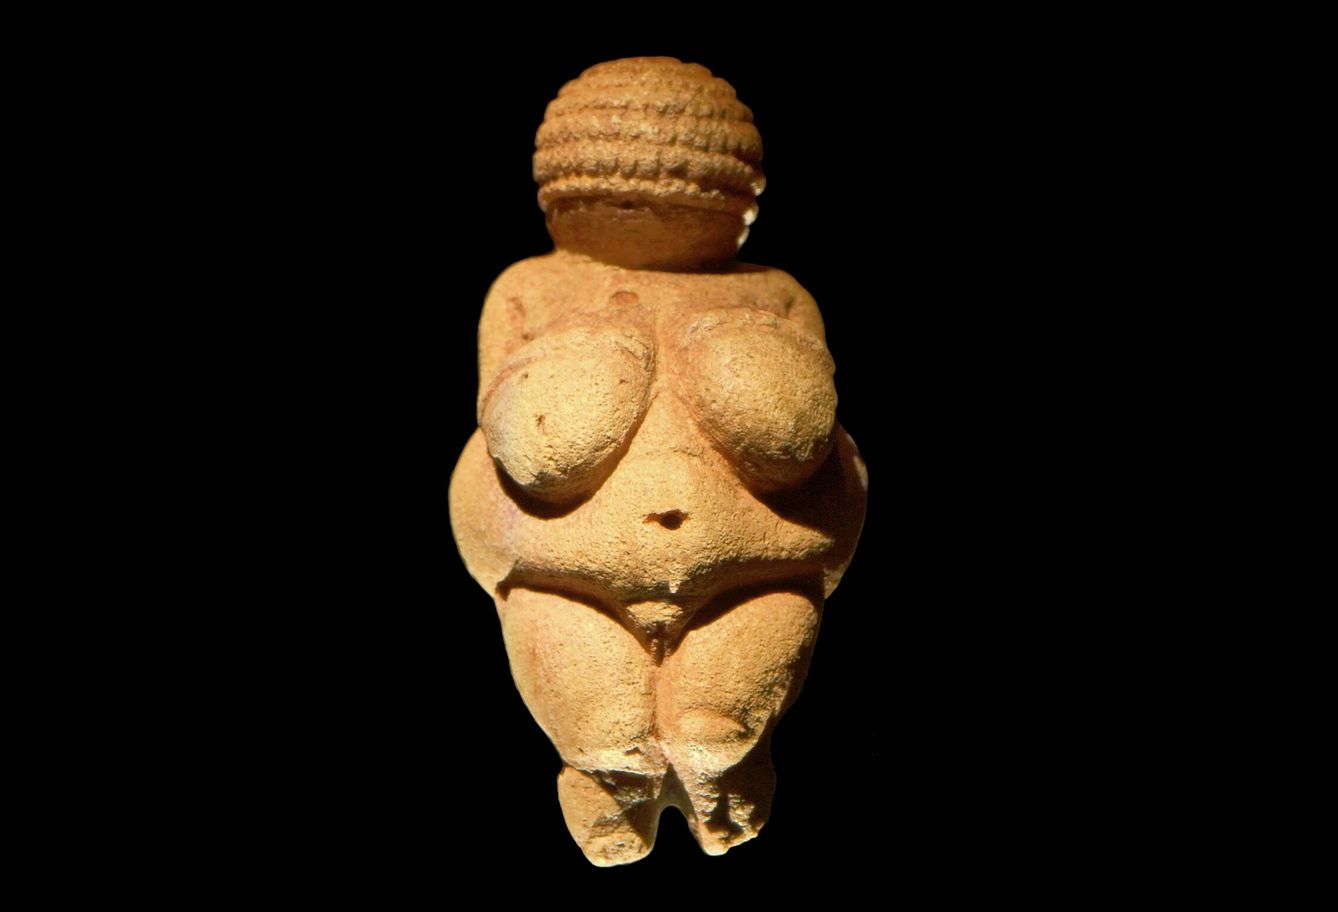 Una Venus paleolítica entrada en carnes. (Wikimedia)